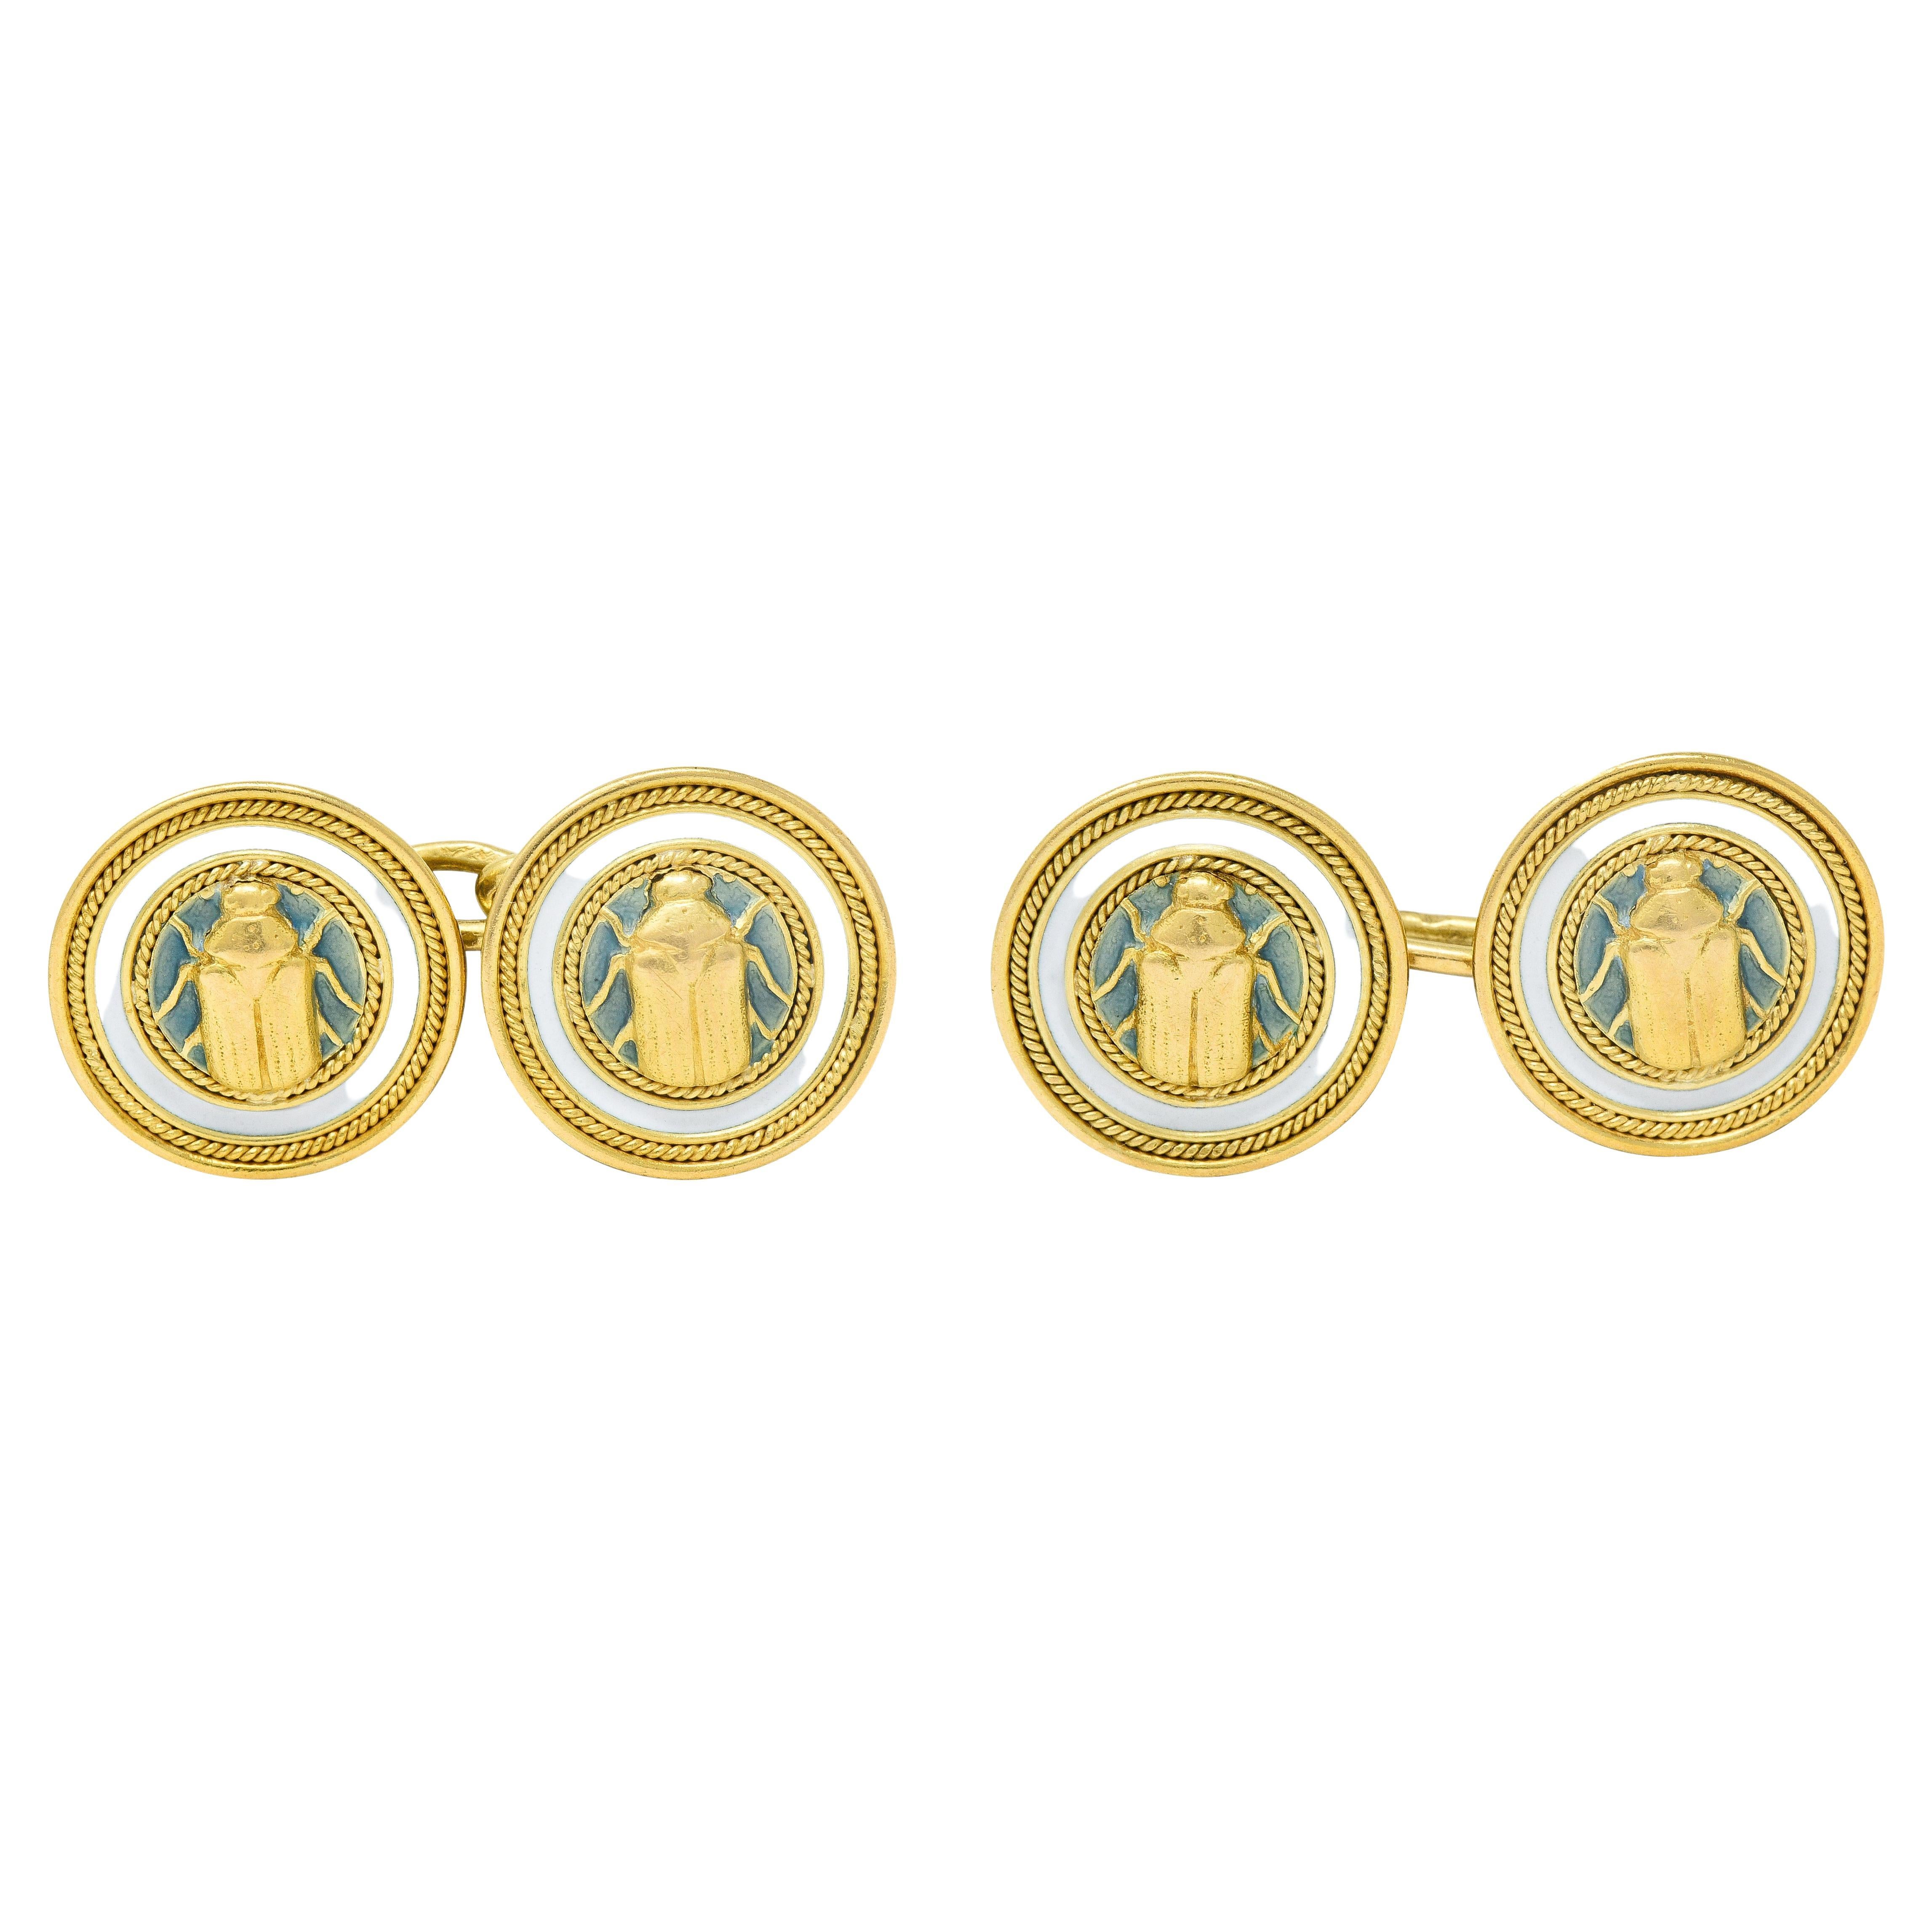 Antike französische Jugendstil-Manschettenknöpfe aus 18 Karat Gelbgold mit Emaille und Skarabäus